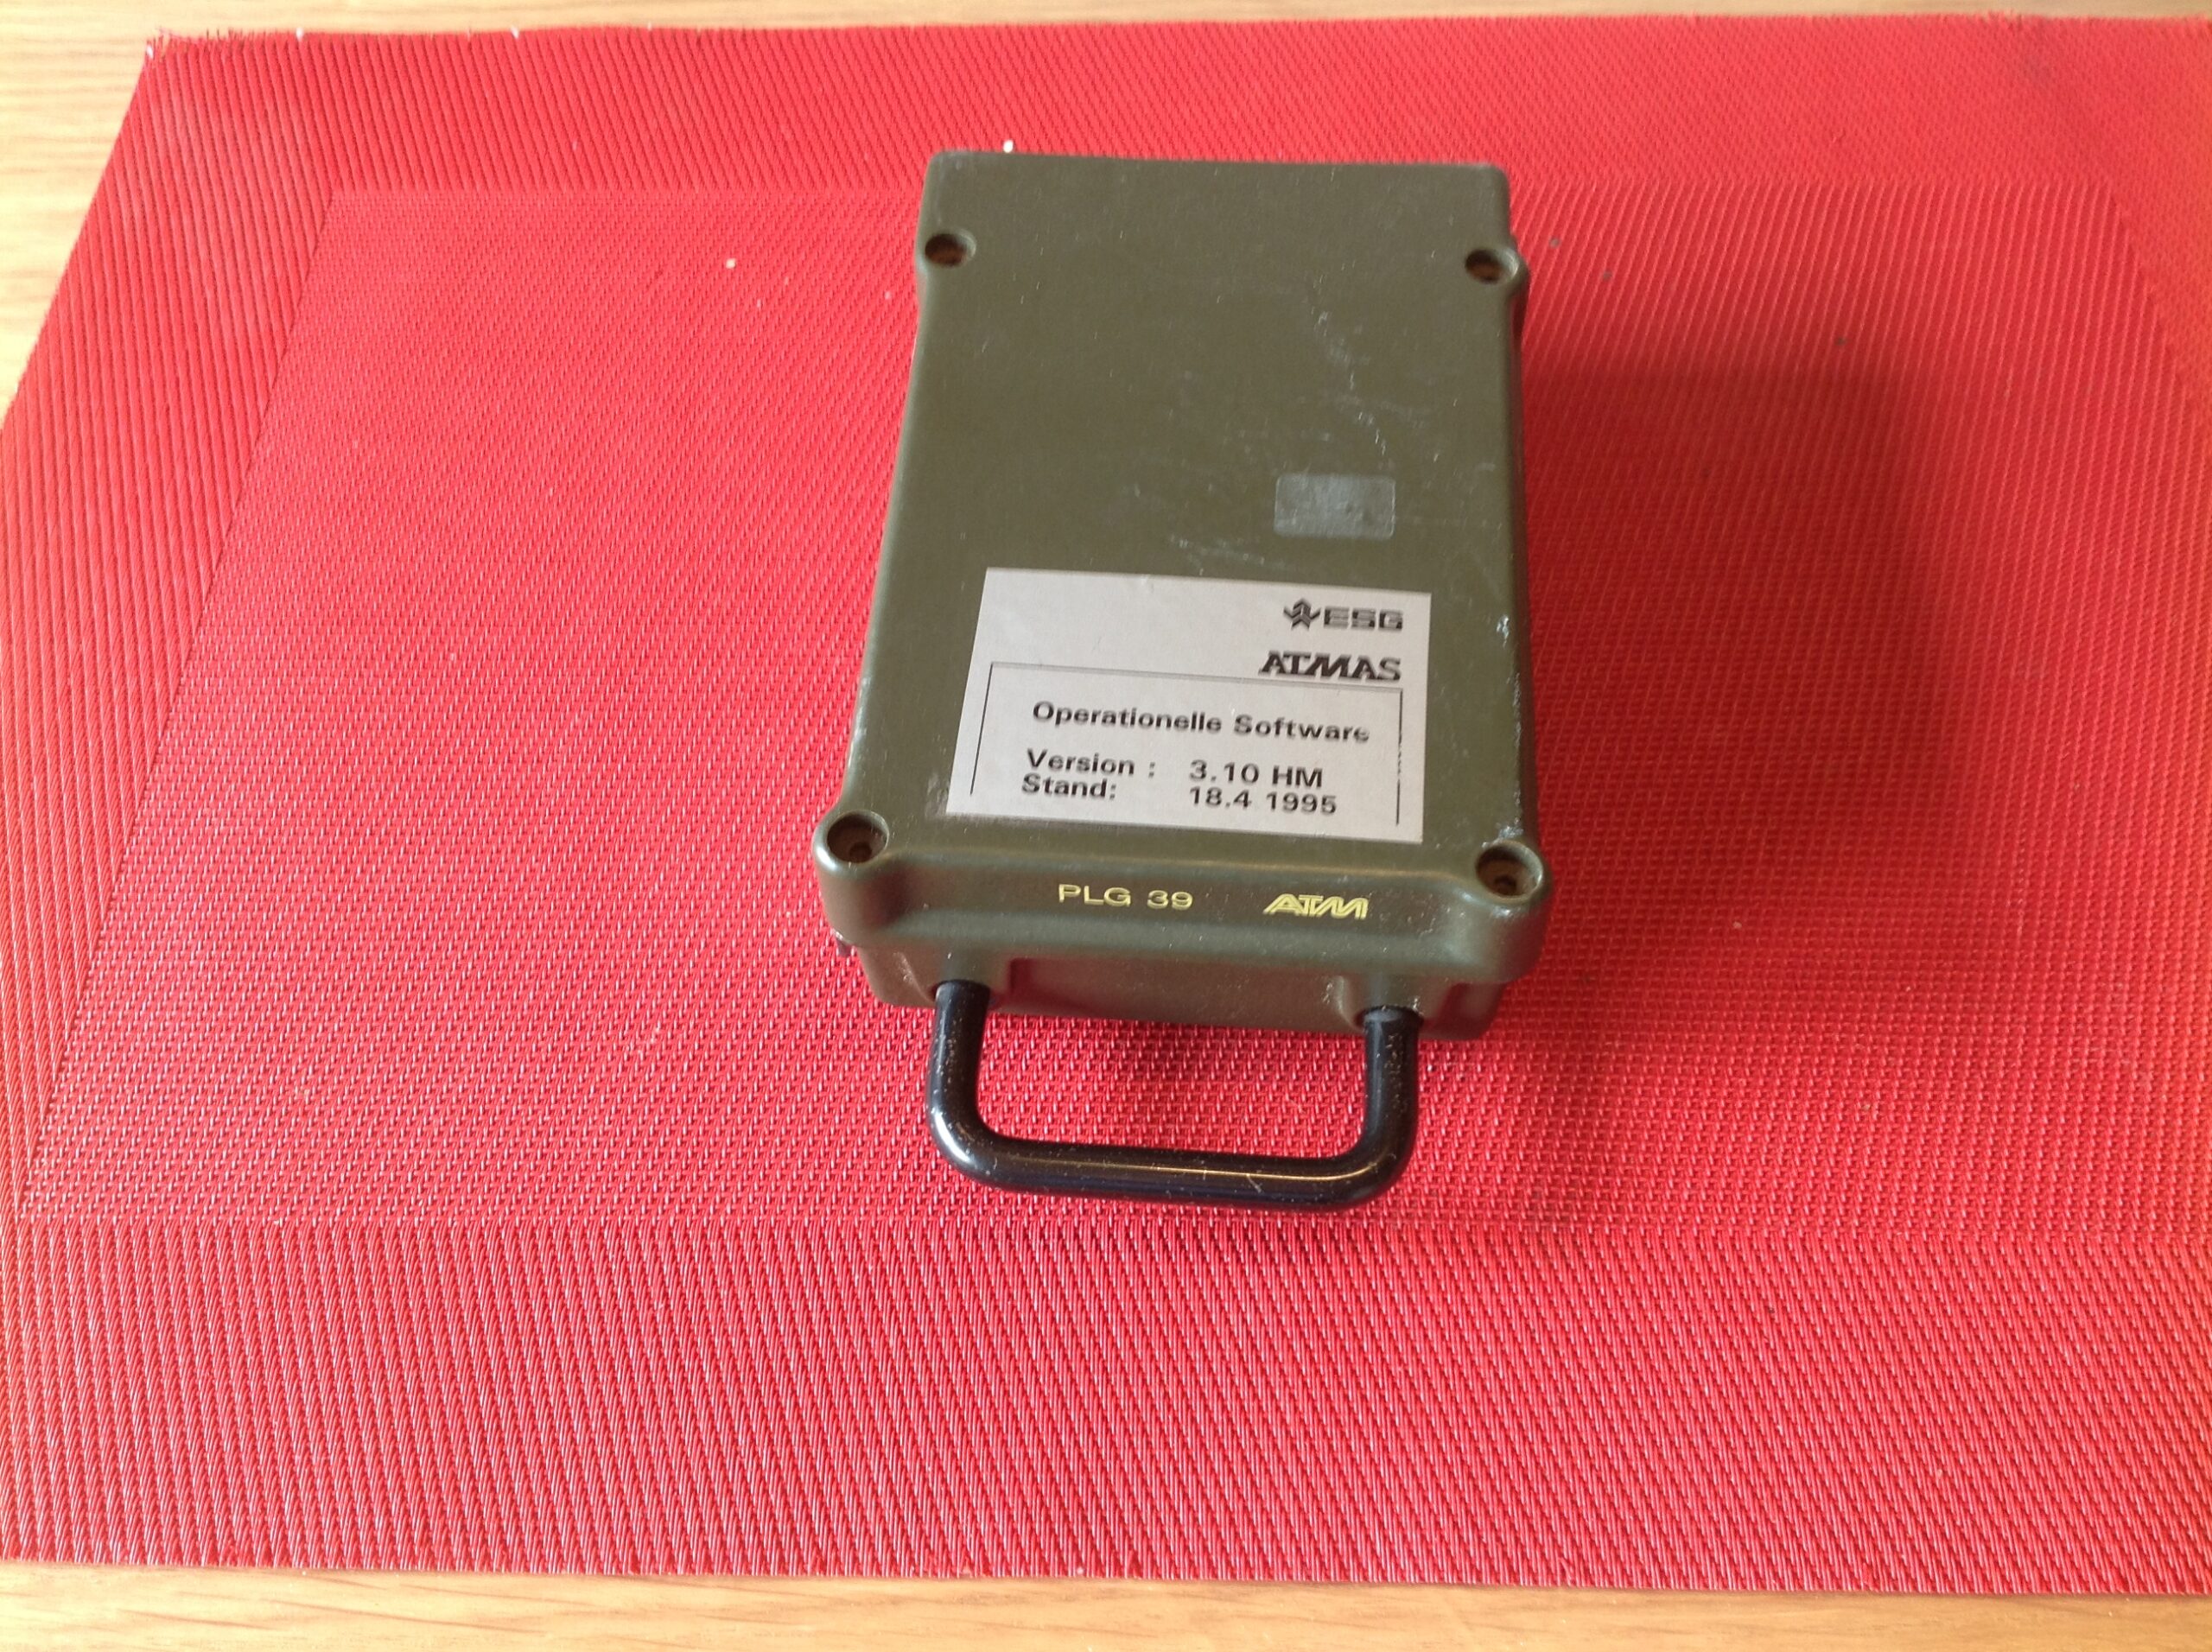 Festplattenlaufwerk, Magnetblasenspeicher Typ MBS 1000 vom PLG 39